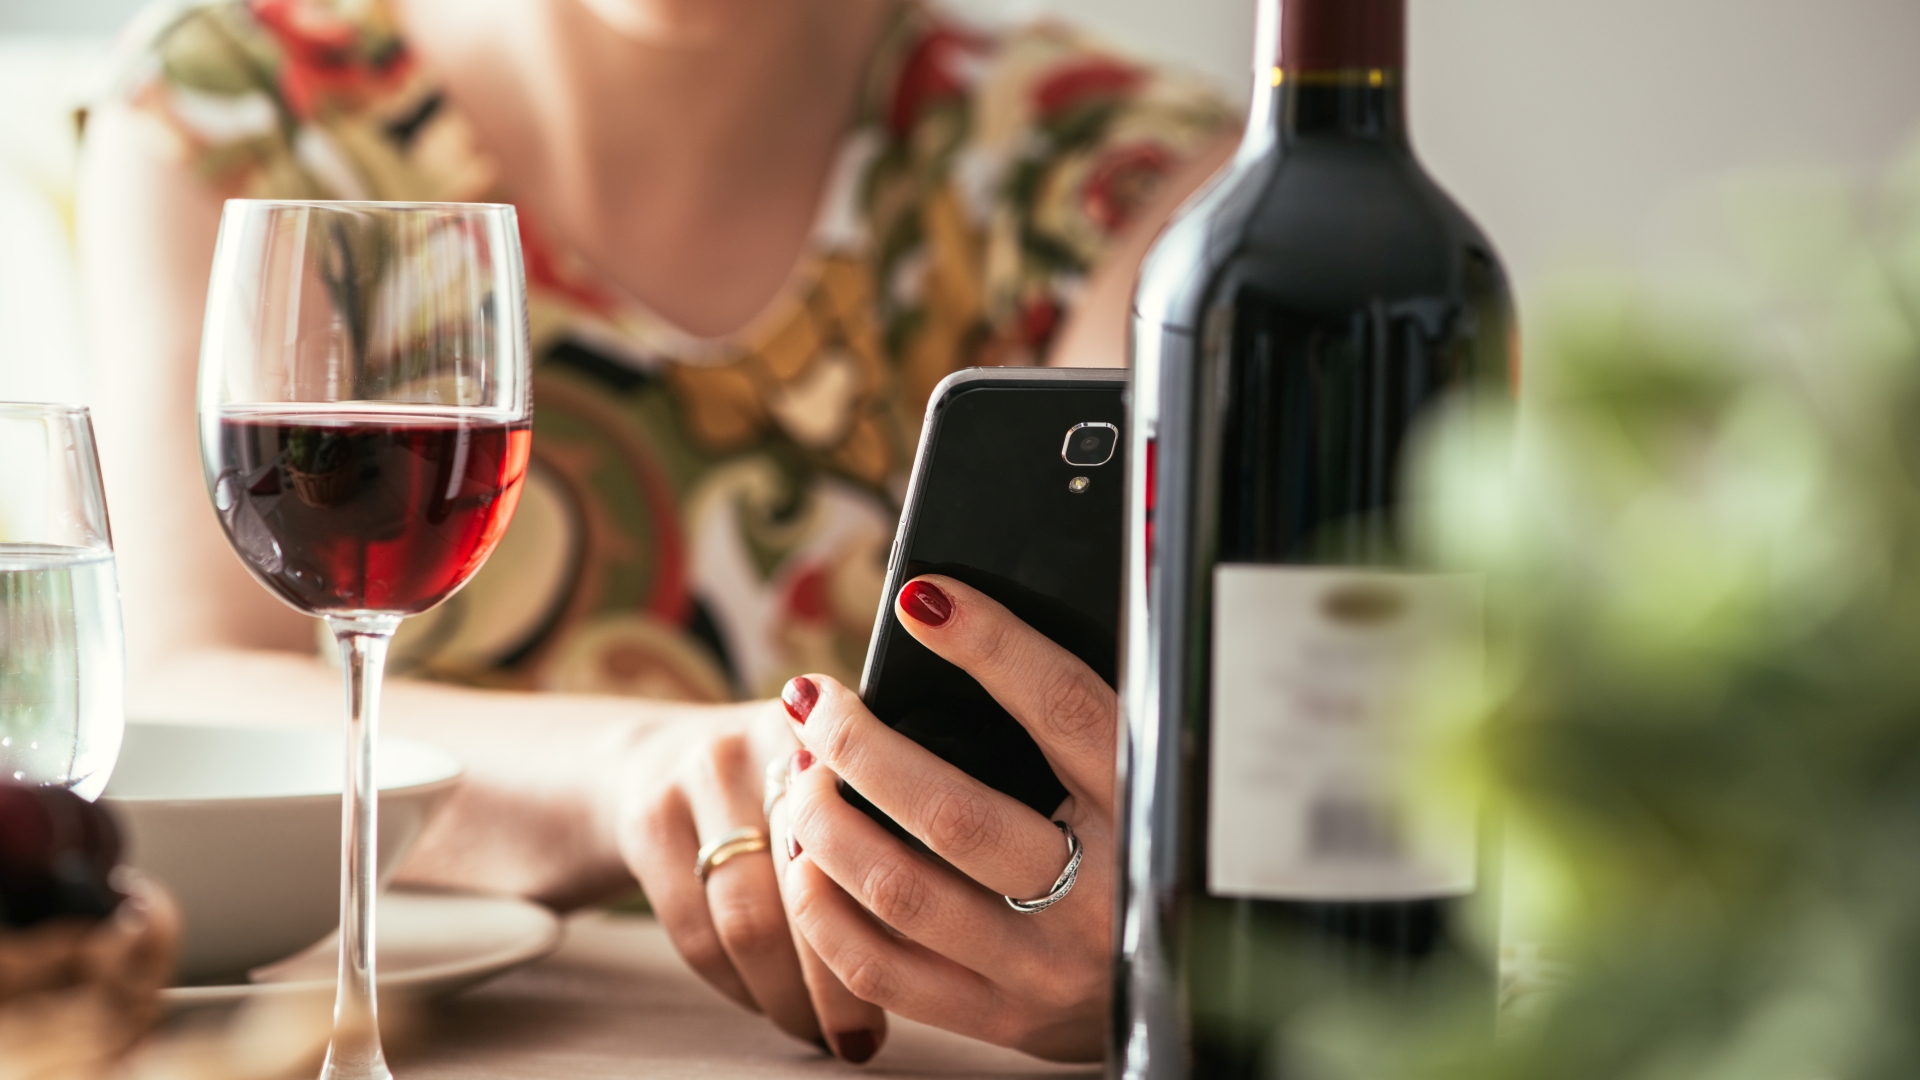 Wein statt WhatsApp: Wirt belohnt Smartphone-Verzicht